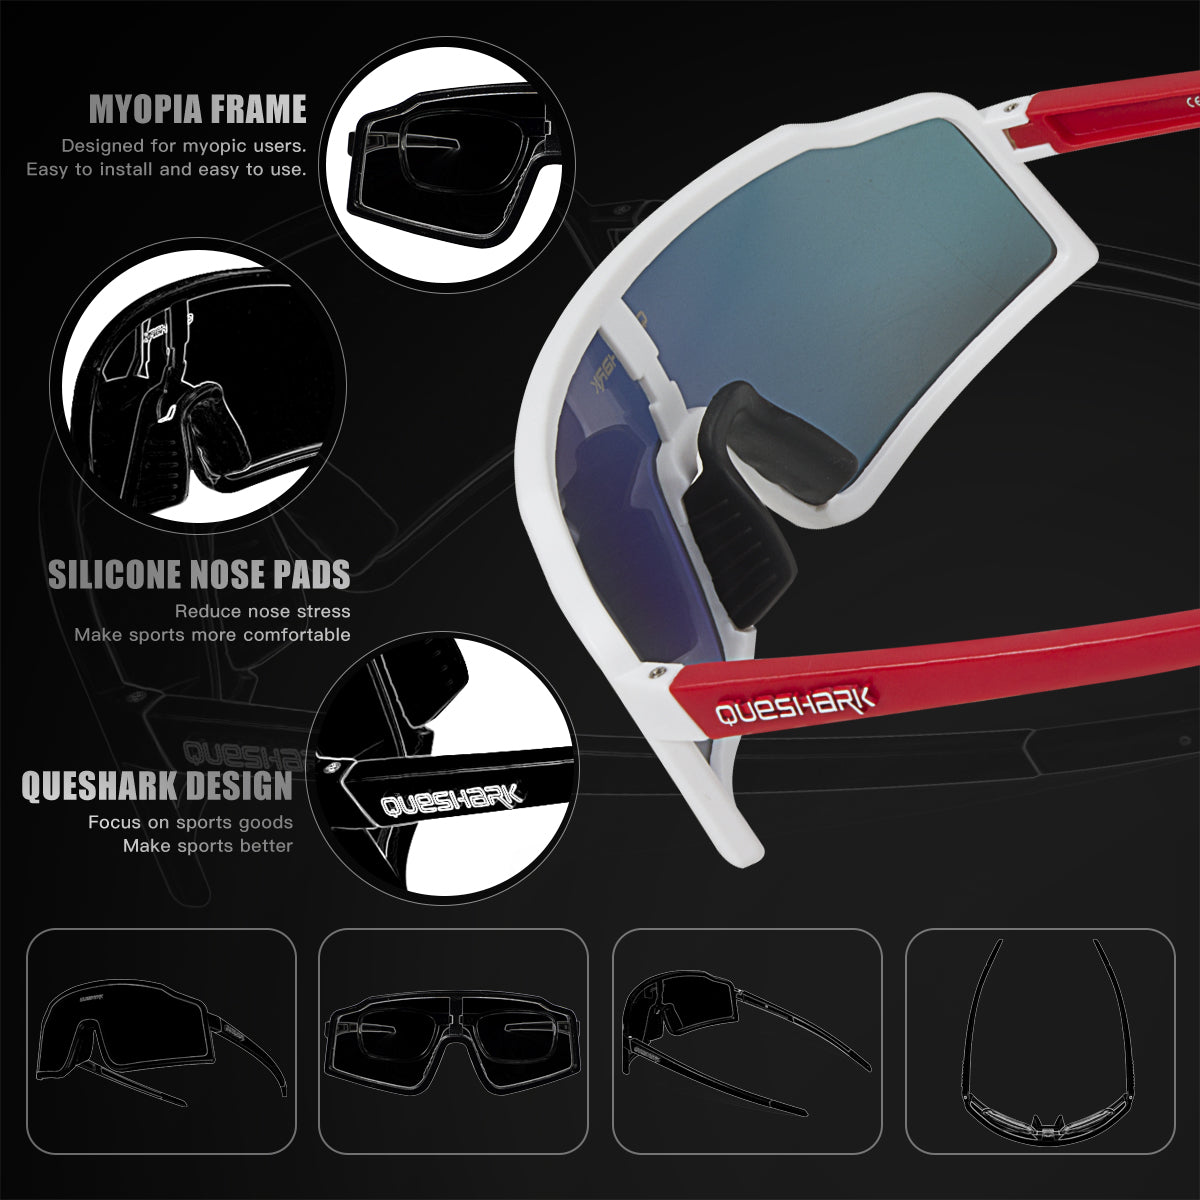 QE54 White Sports Glasses Polarized Bicycle Sunglasses Cycling Eyewear 3 Lens/Set